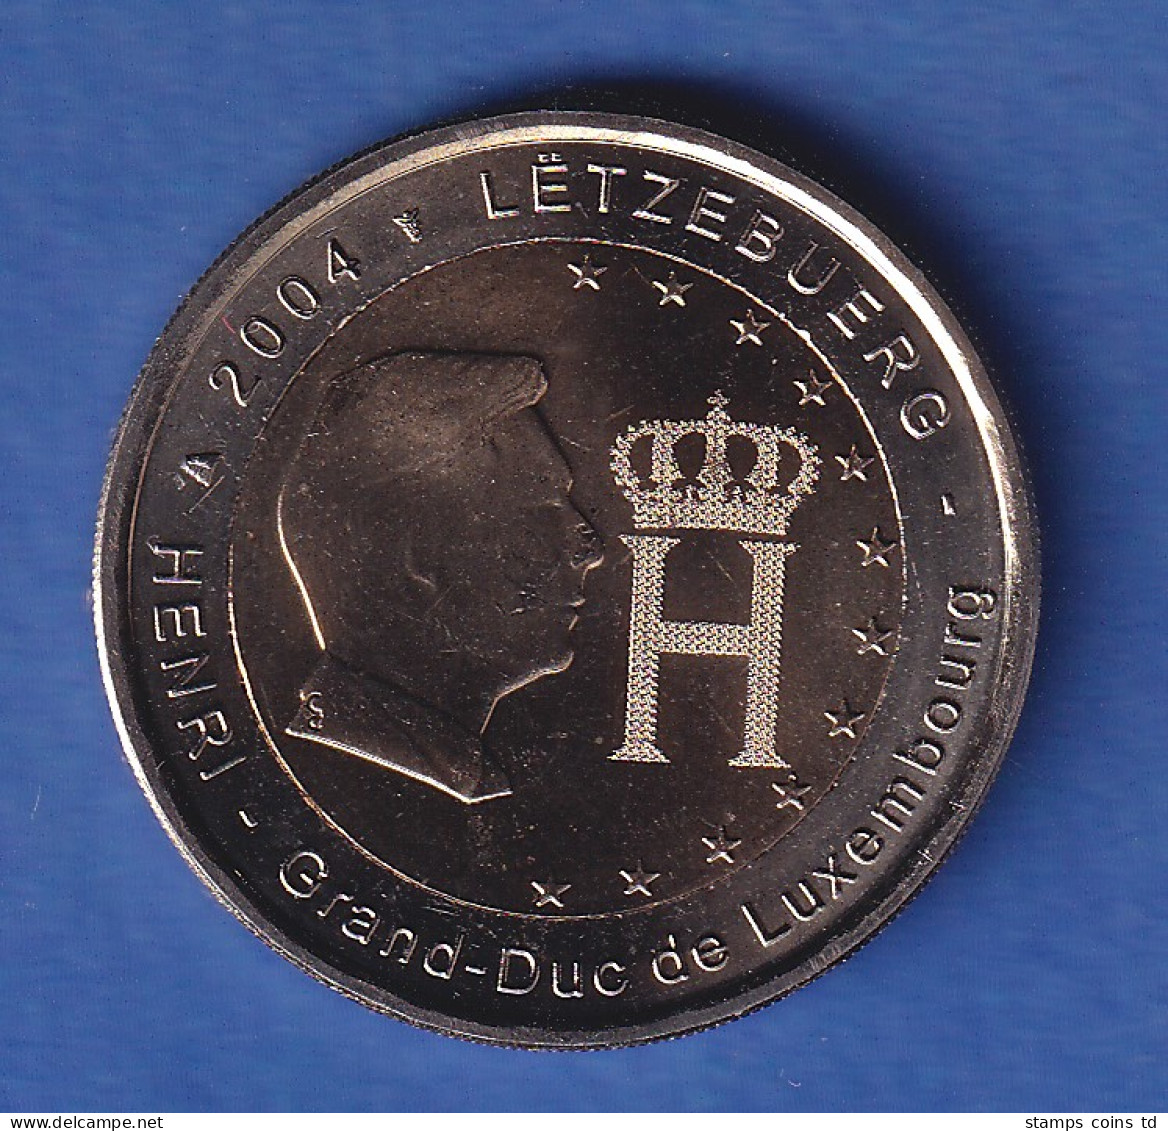 Luxemburg 2004 2-Euro-Sondermünze Henri Und Monogramm Bankfr. Unzirk. - Lussemburgo